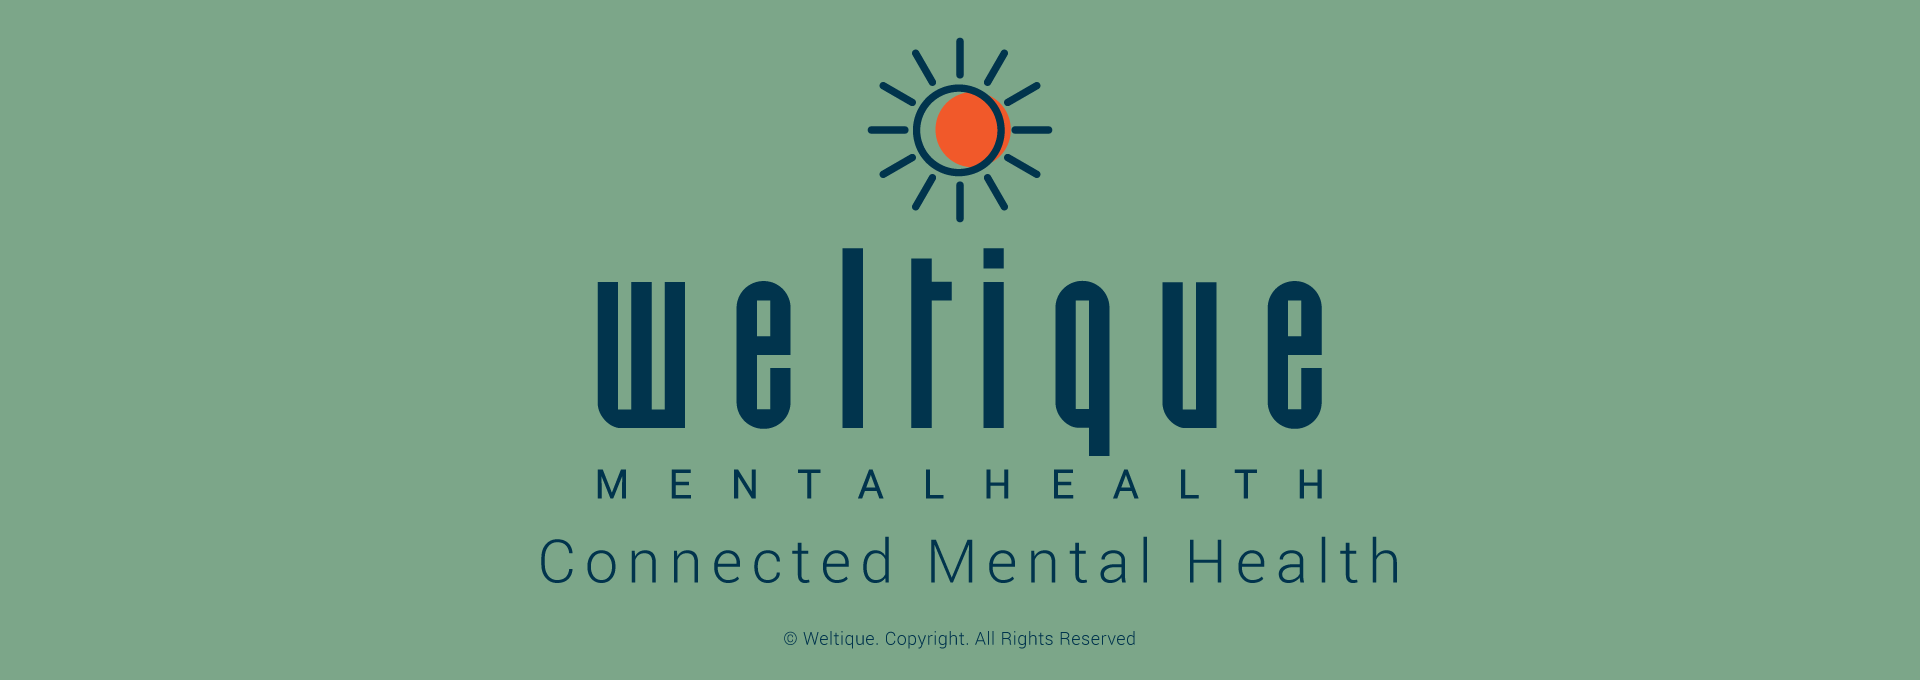 Weltique Mental Health